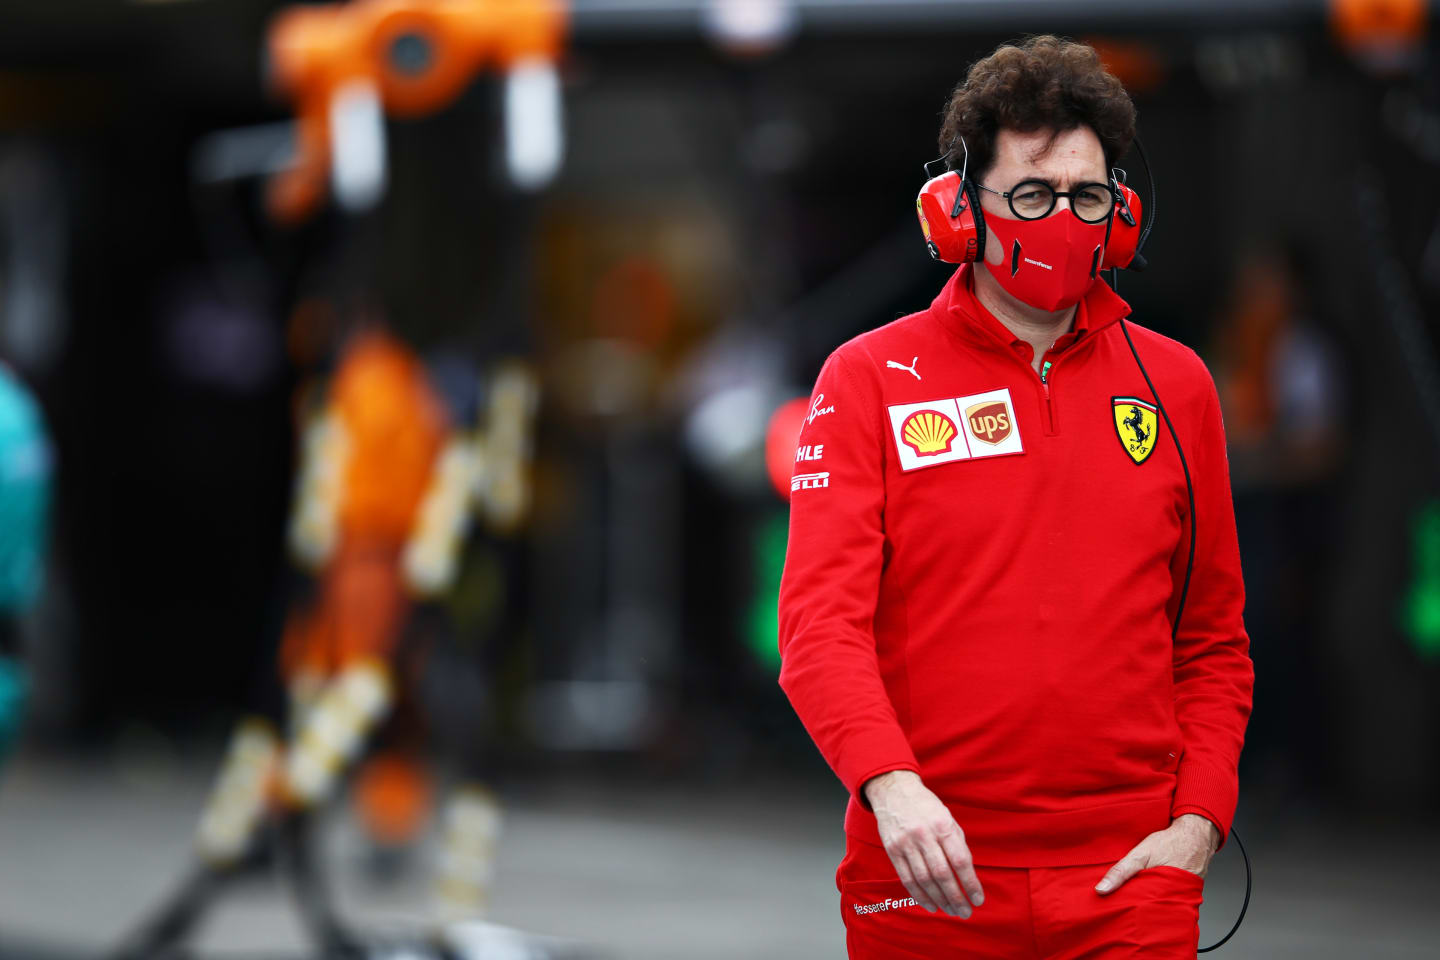 PORTIMAO, PORTUGAL - OCTOBER 25: Scuderia Ferrari Team Principal Mattia Binotto walks in the